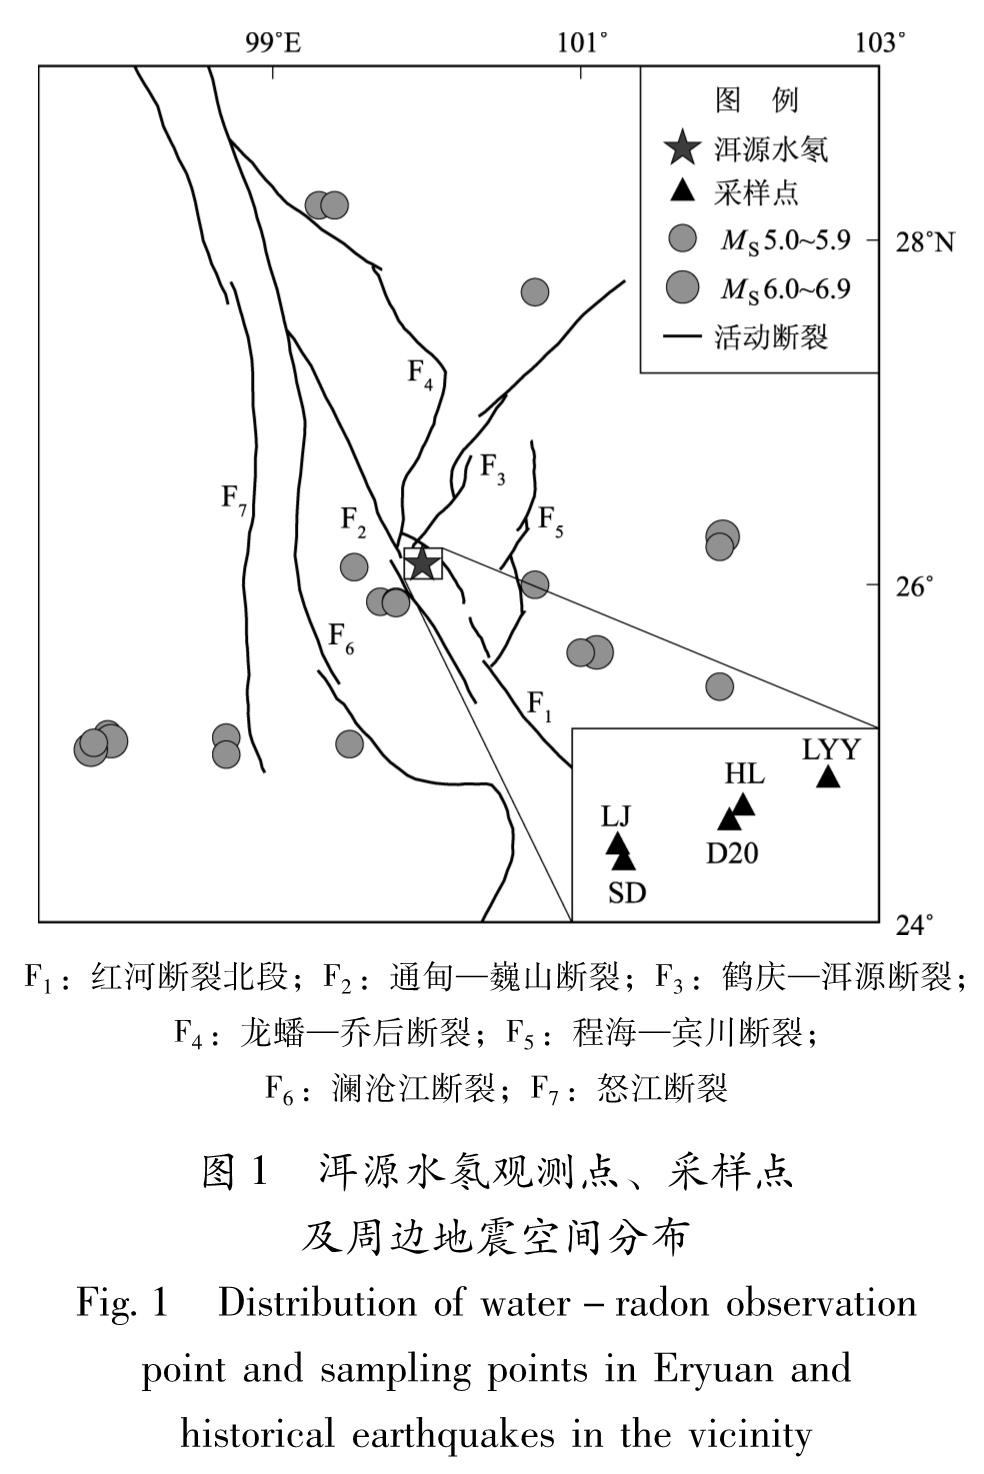 图1 洱源水氡观测点、采样点及周边地震空间分布<br/>Fig.1 Distribution of water-radon observation point and sampling points in Eryuan and historical earthquakes in the vicinity